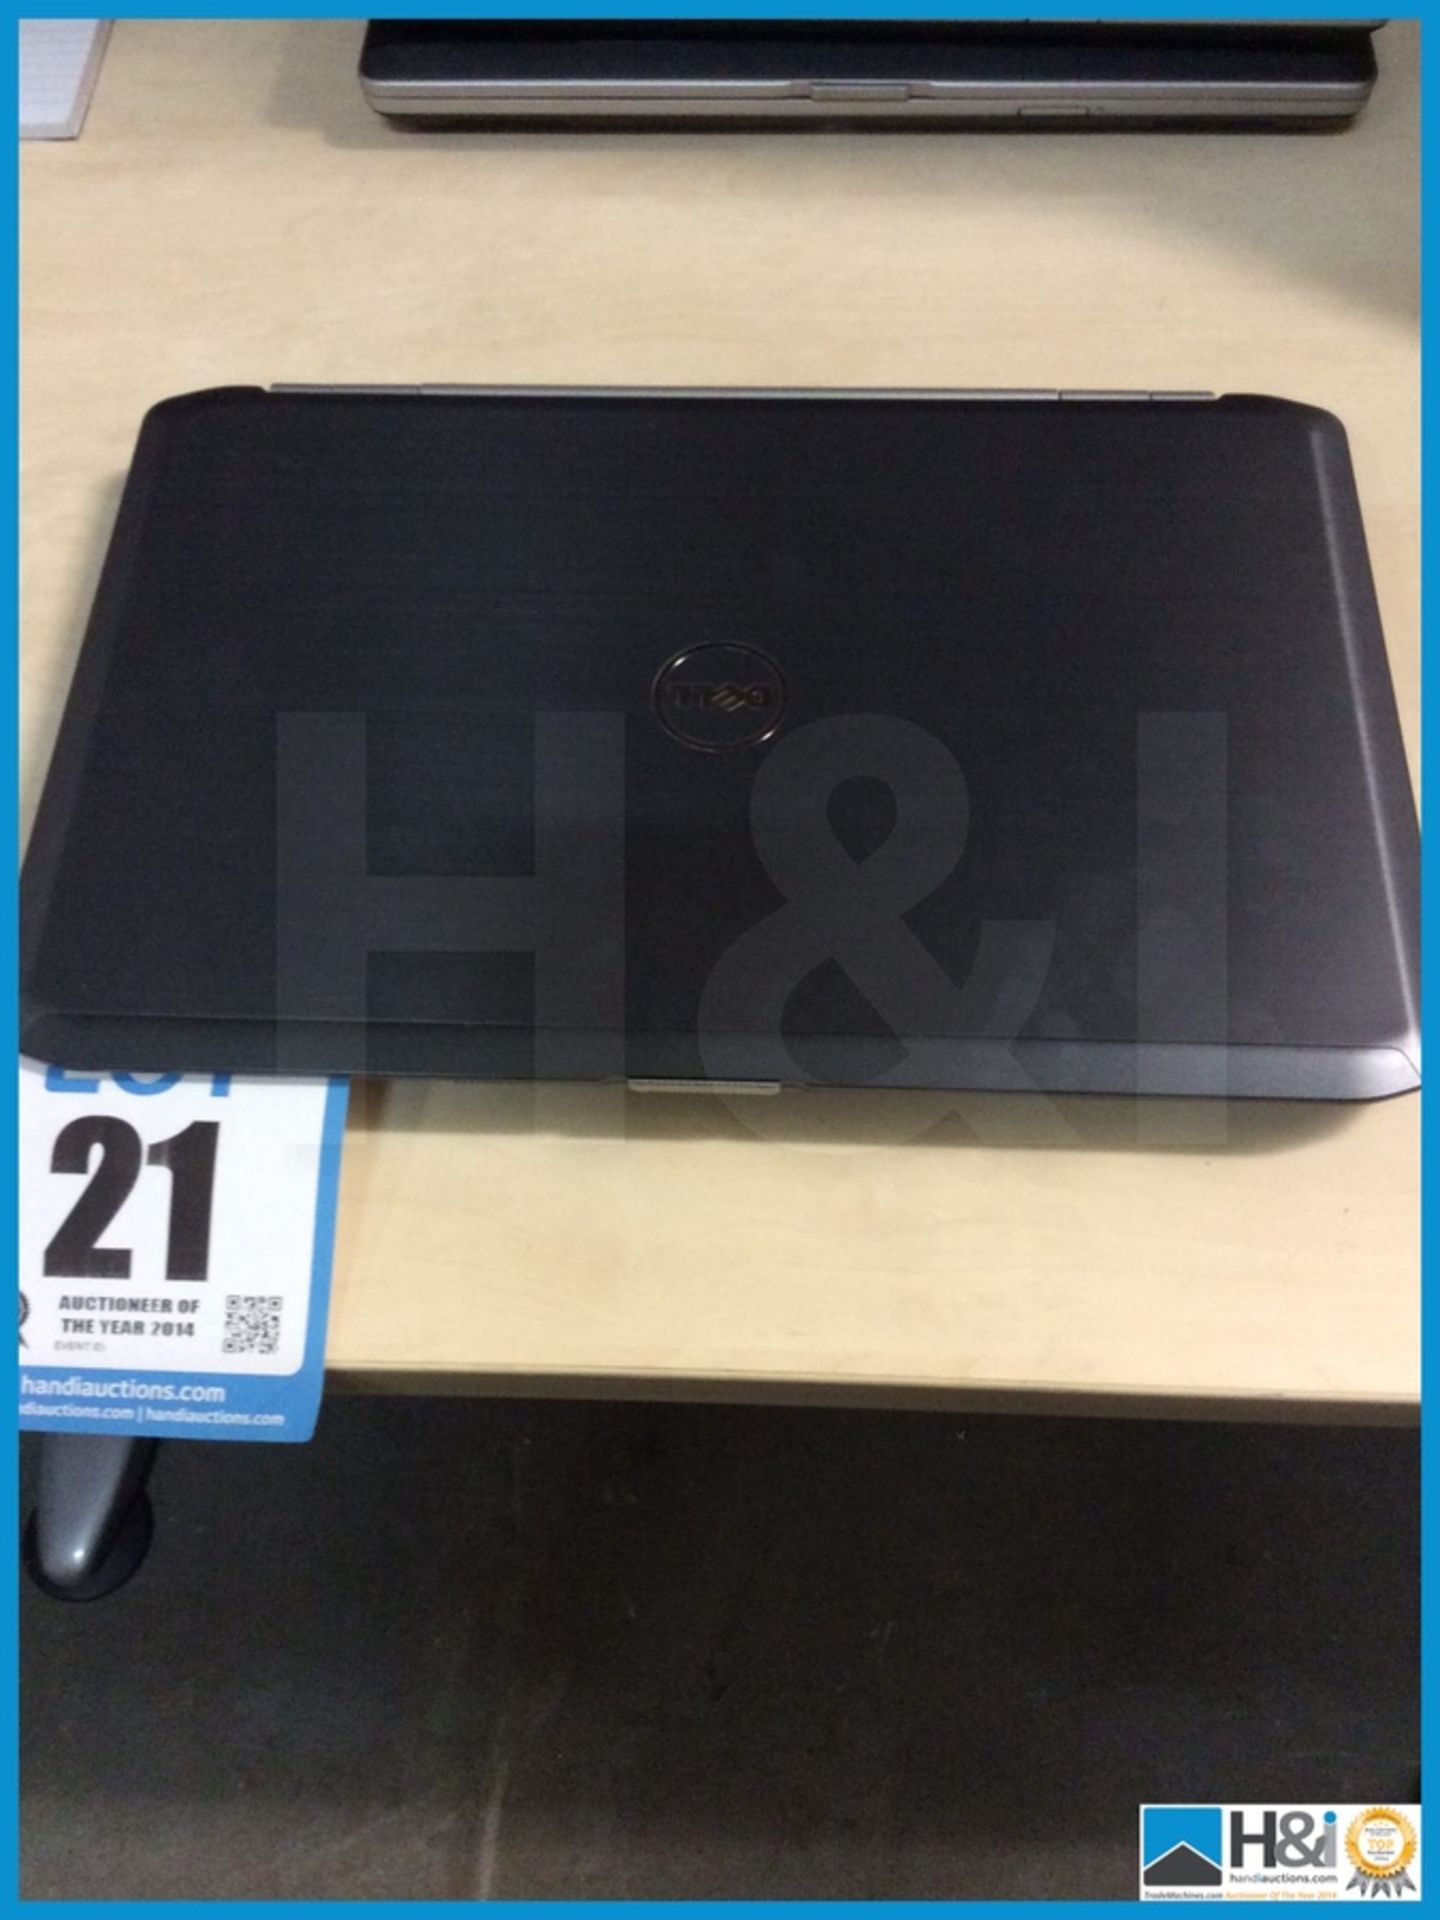 DELL Latitude E5520 laptop 15" intel core I5 - Image 3 of 3